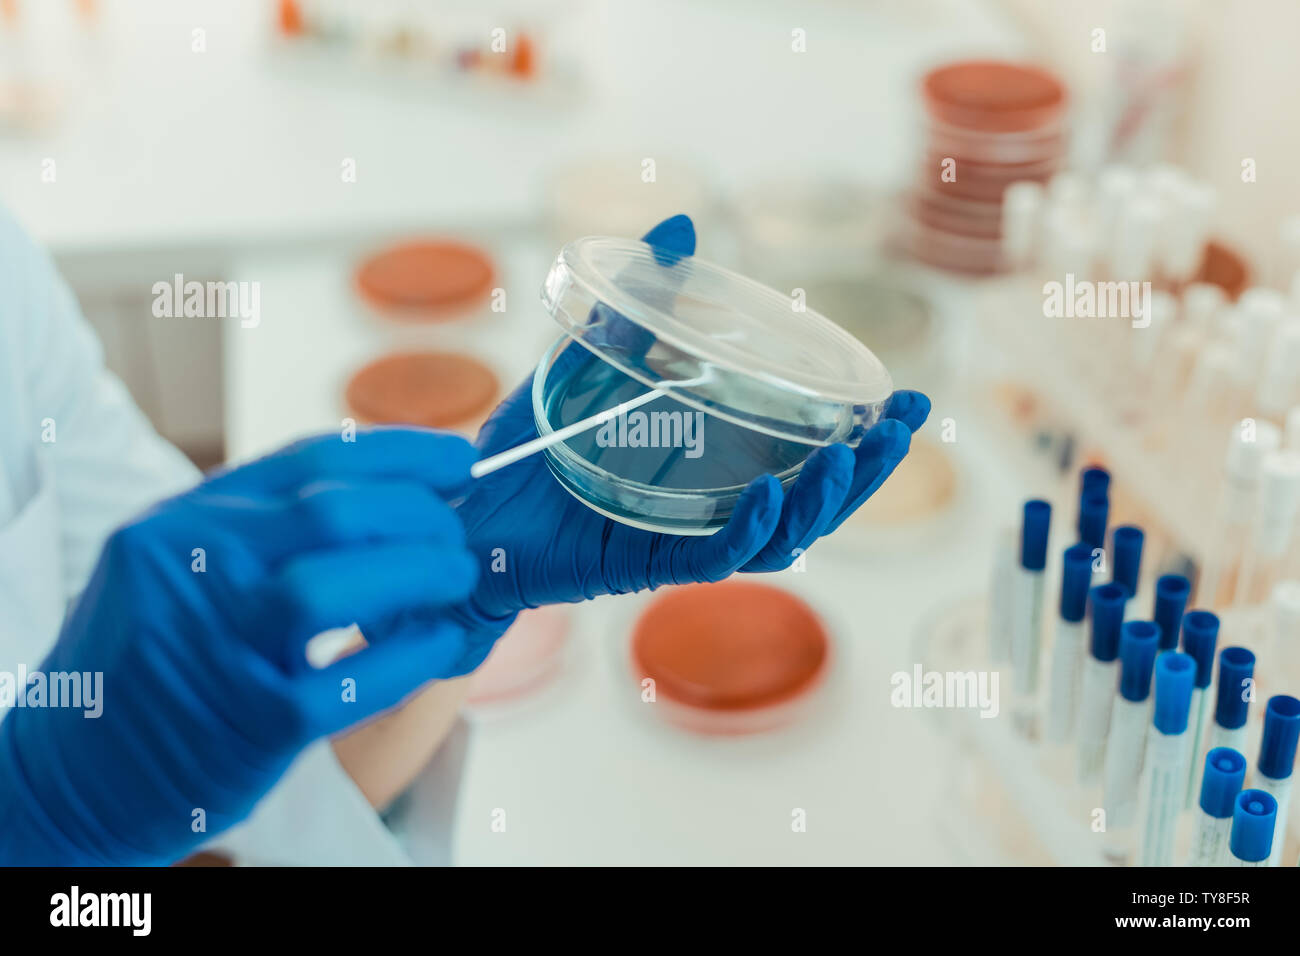 Selective focus of a transparent petri dish Stock Photo